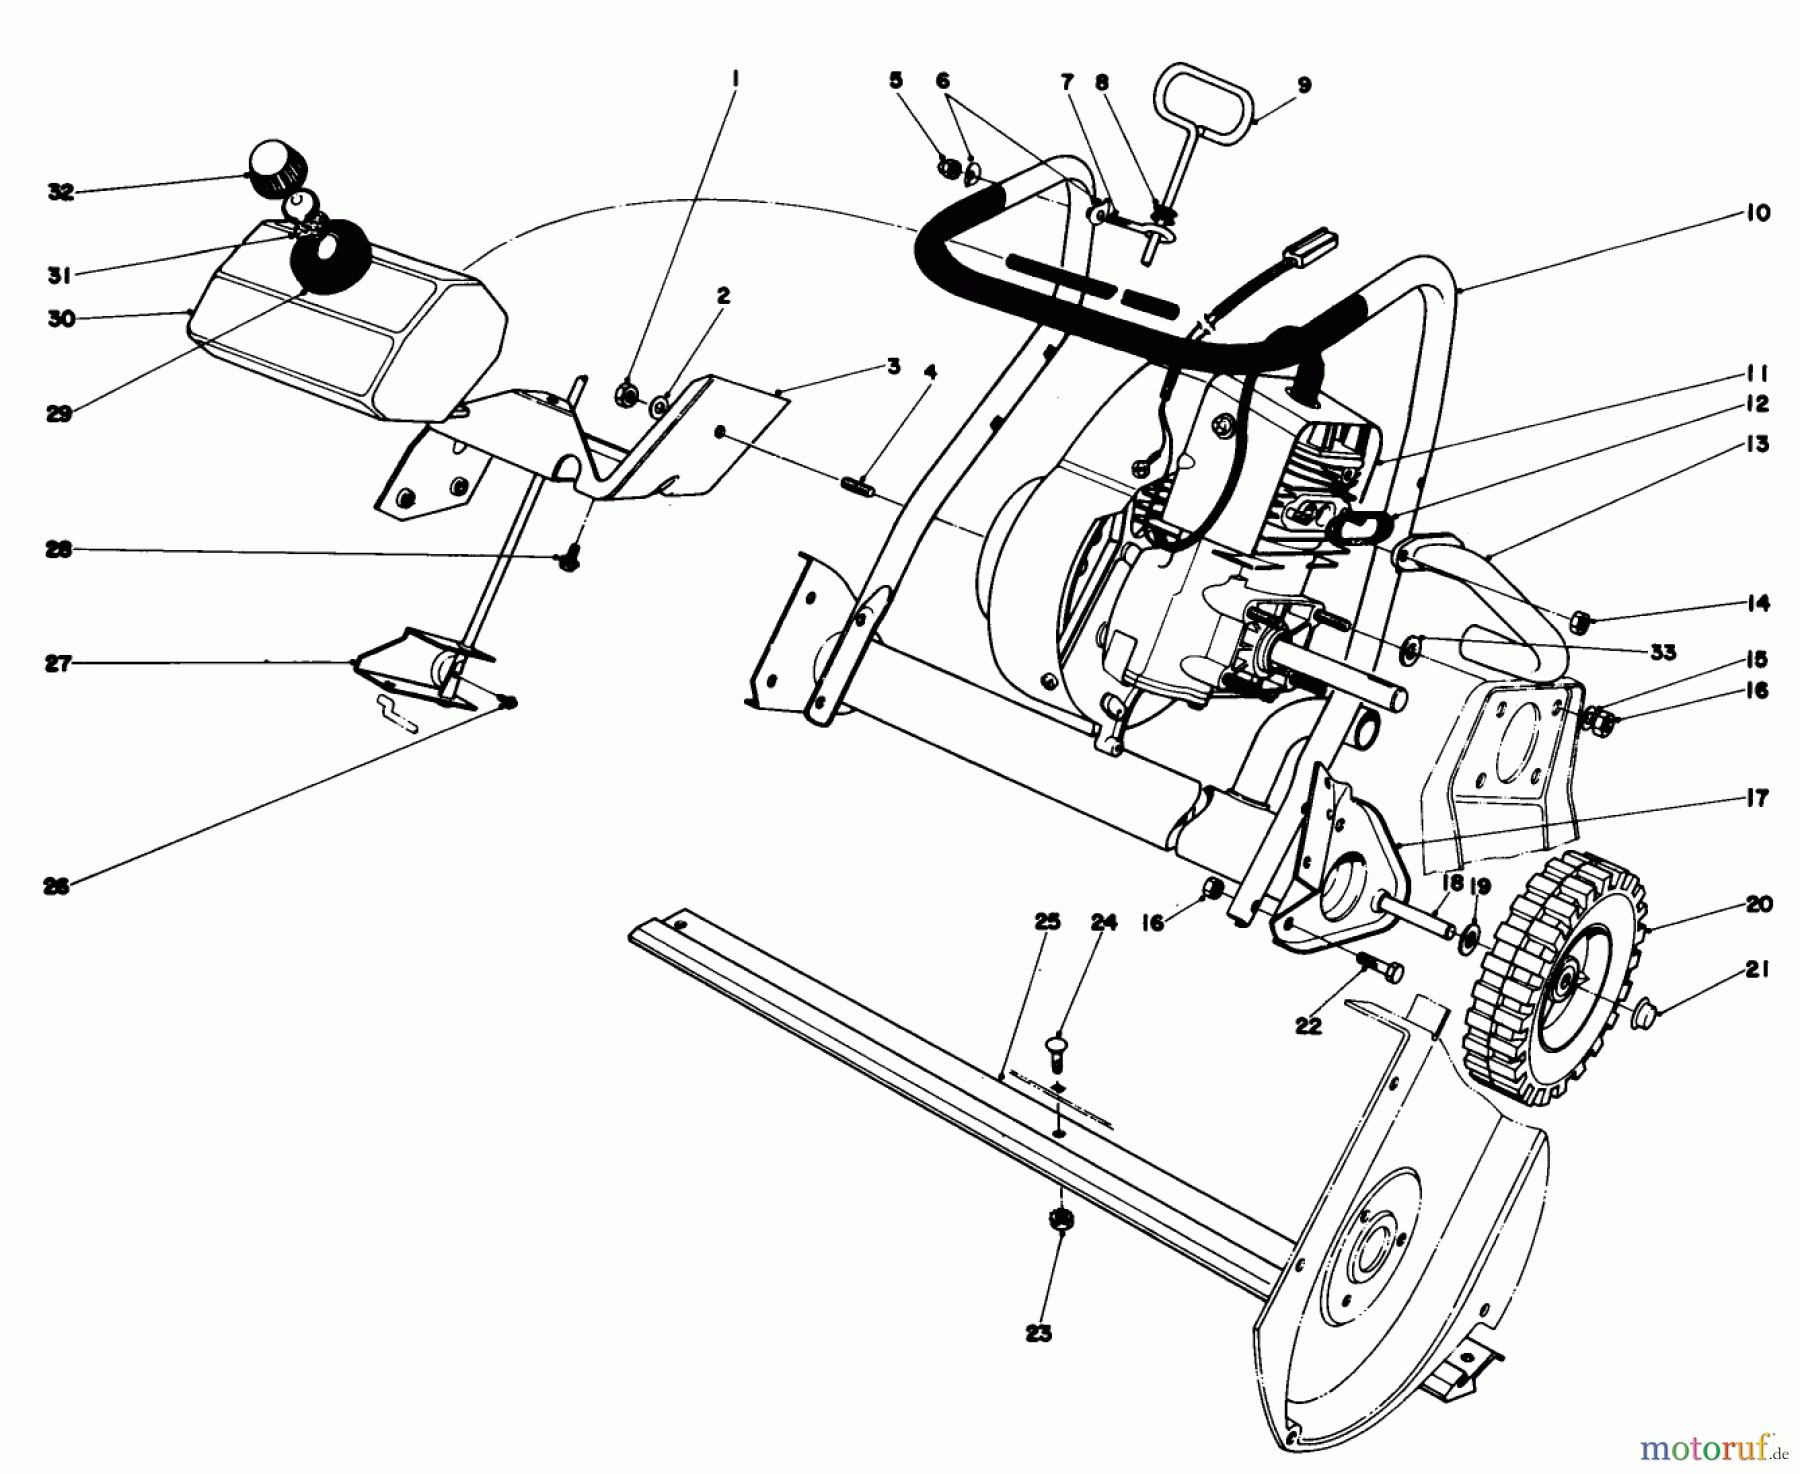  Toro Neu Snow Blowers/Snow Throwers Seite 1 38030 - Toro Snow Master 20, 1978 (8000001-8999999) ENGINE ASSEMBLY (MODEL 38020)